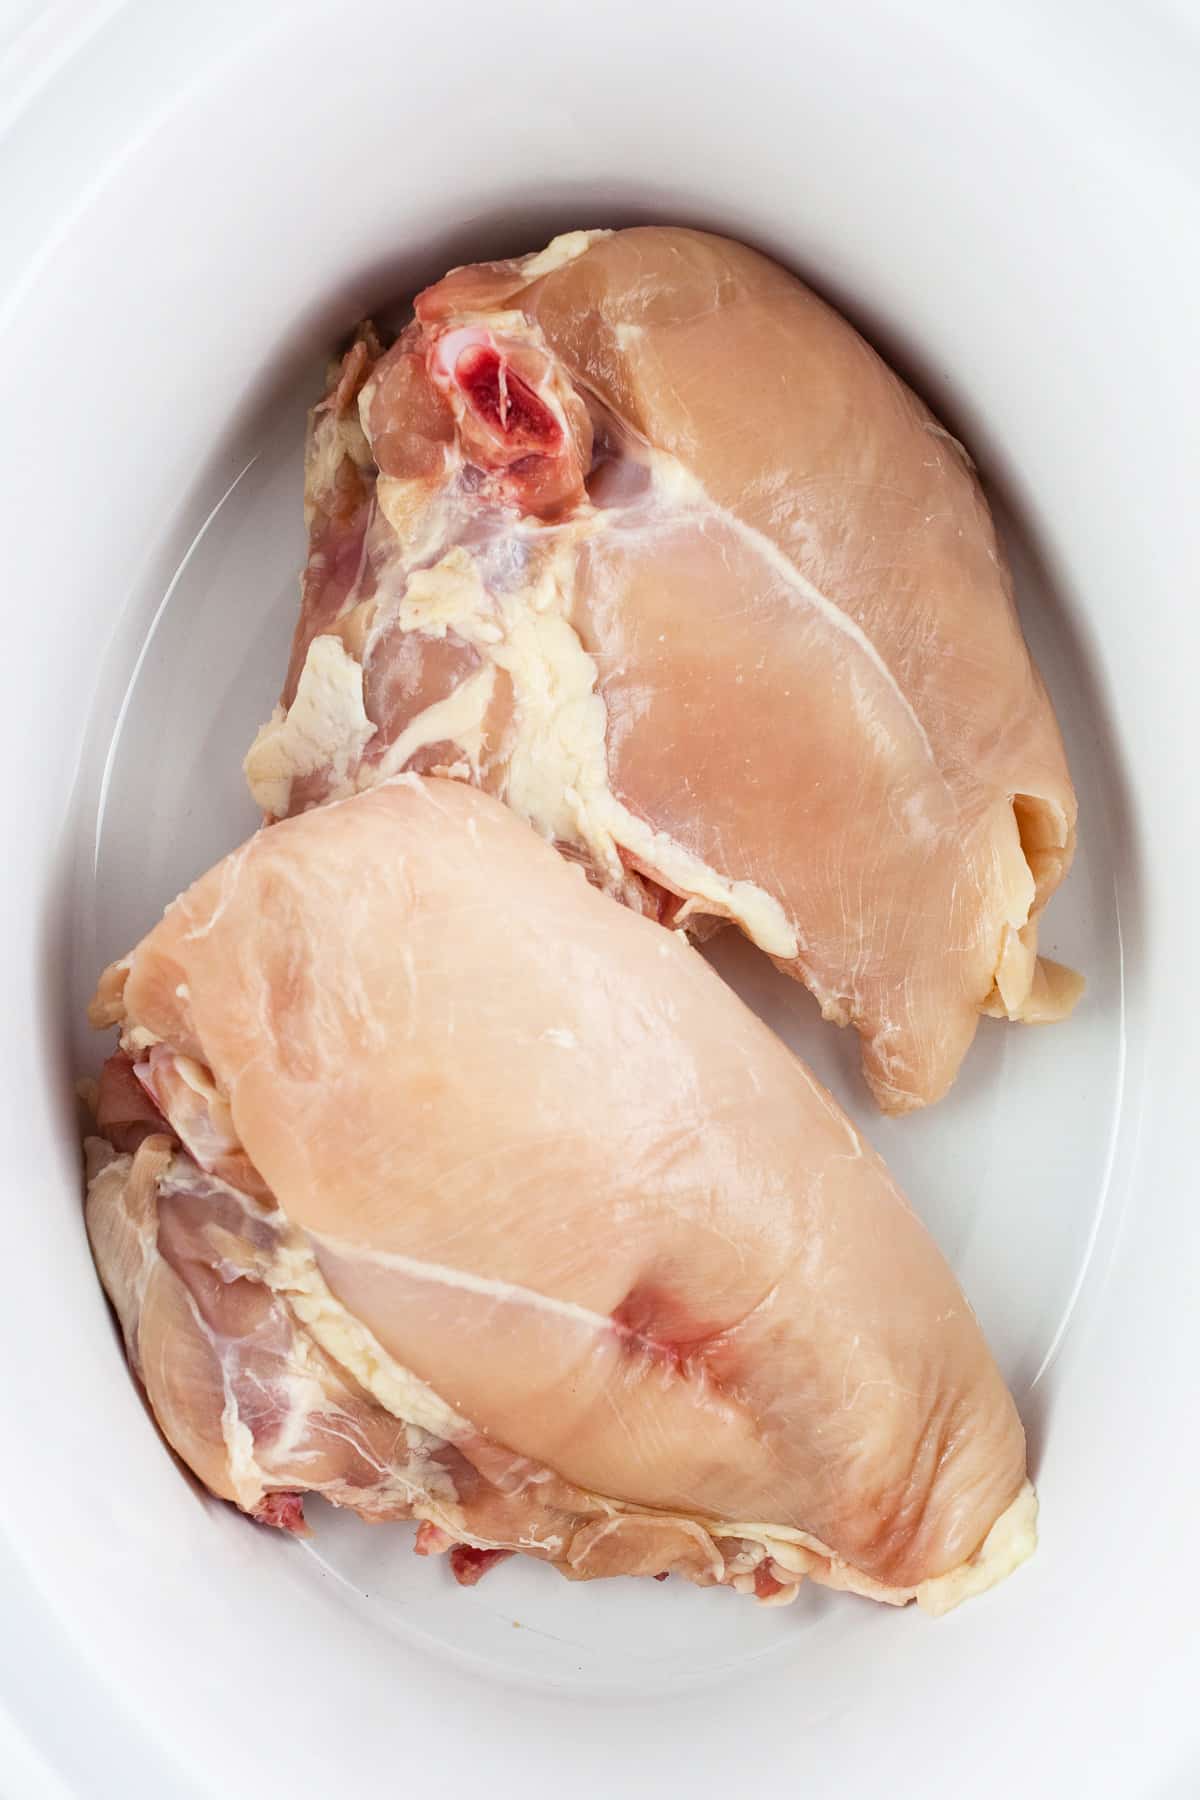 Uncooked split chicken breasts in slow cooker.